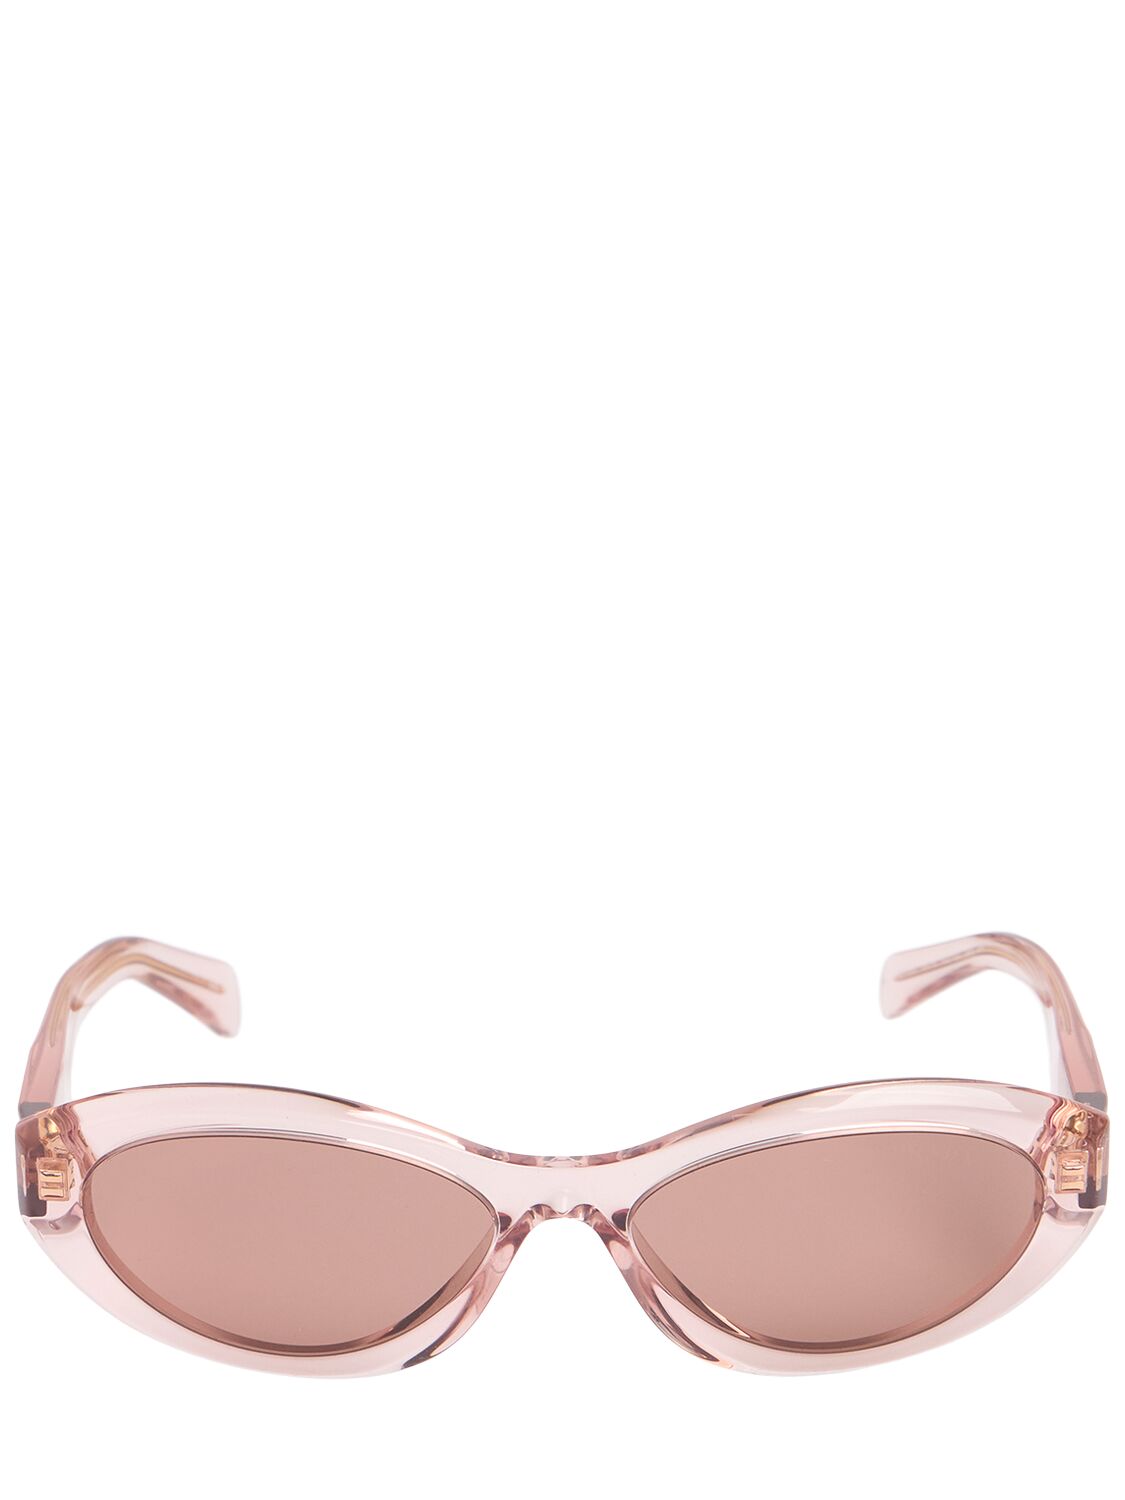 Prada Round Acetate Sunglasses In Clear/pink